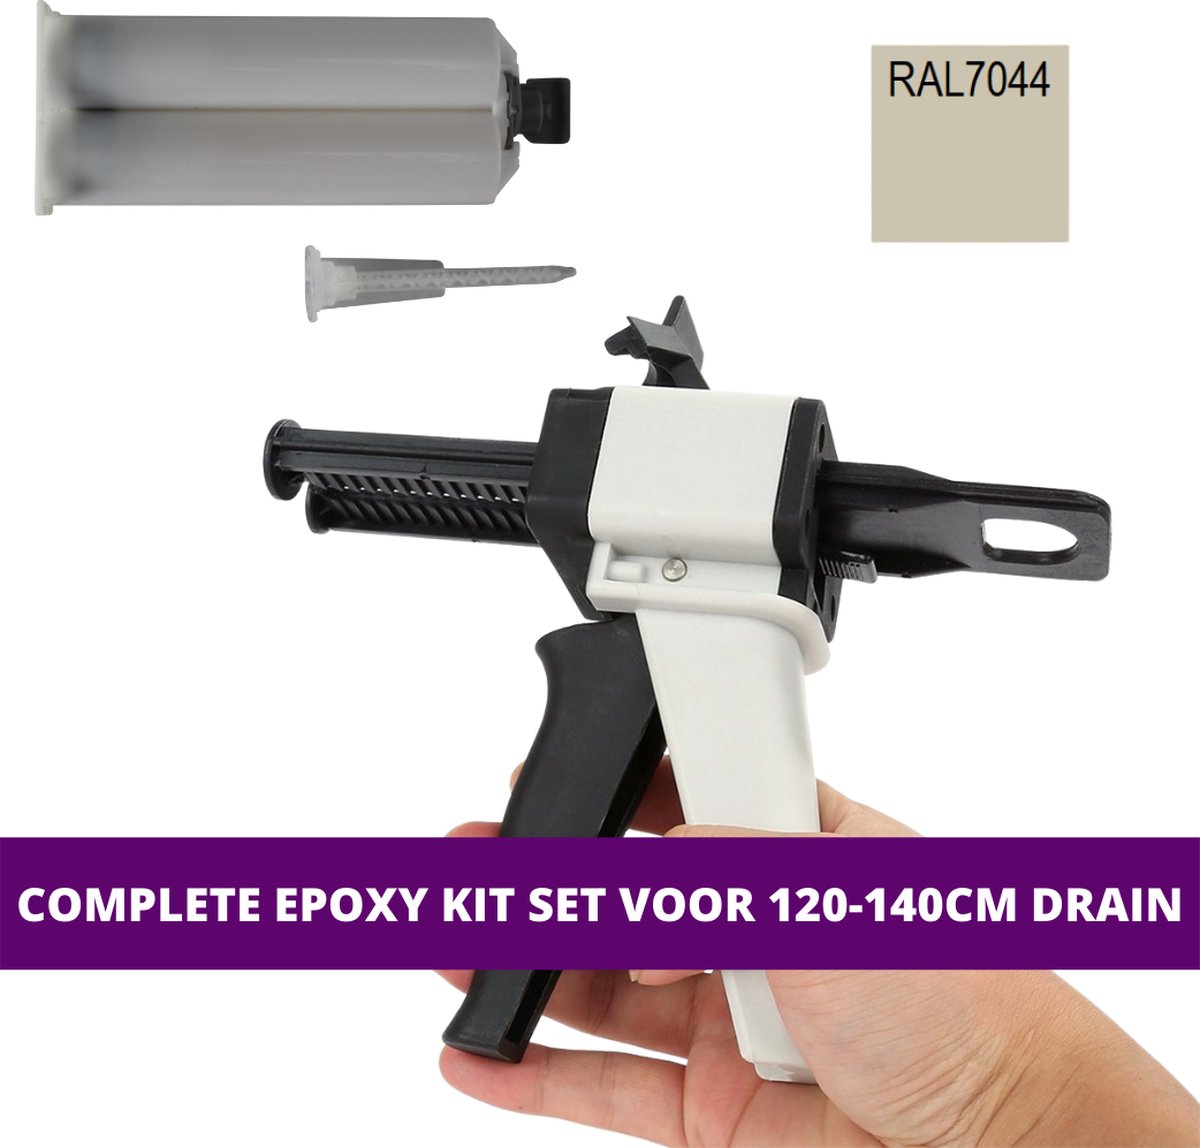 Epoxy kit set voor douchegoten - 120 t/m 140 cm lang - Zijdegrijs - RAL7044/5 - 2-componenten